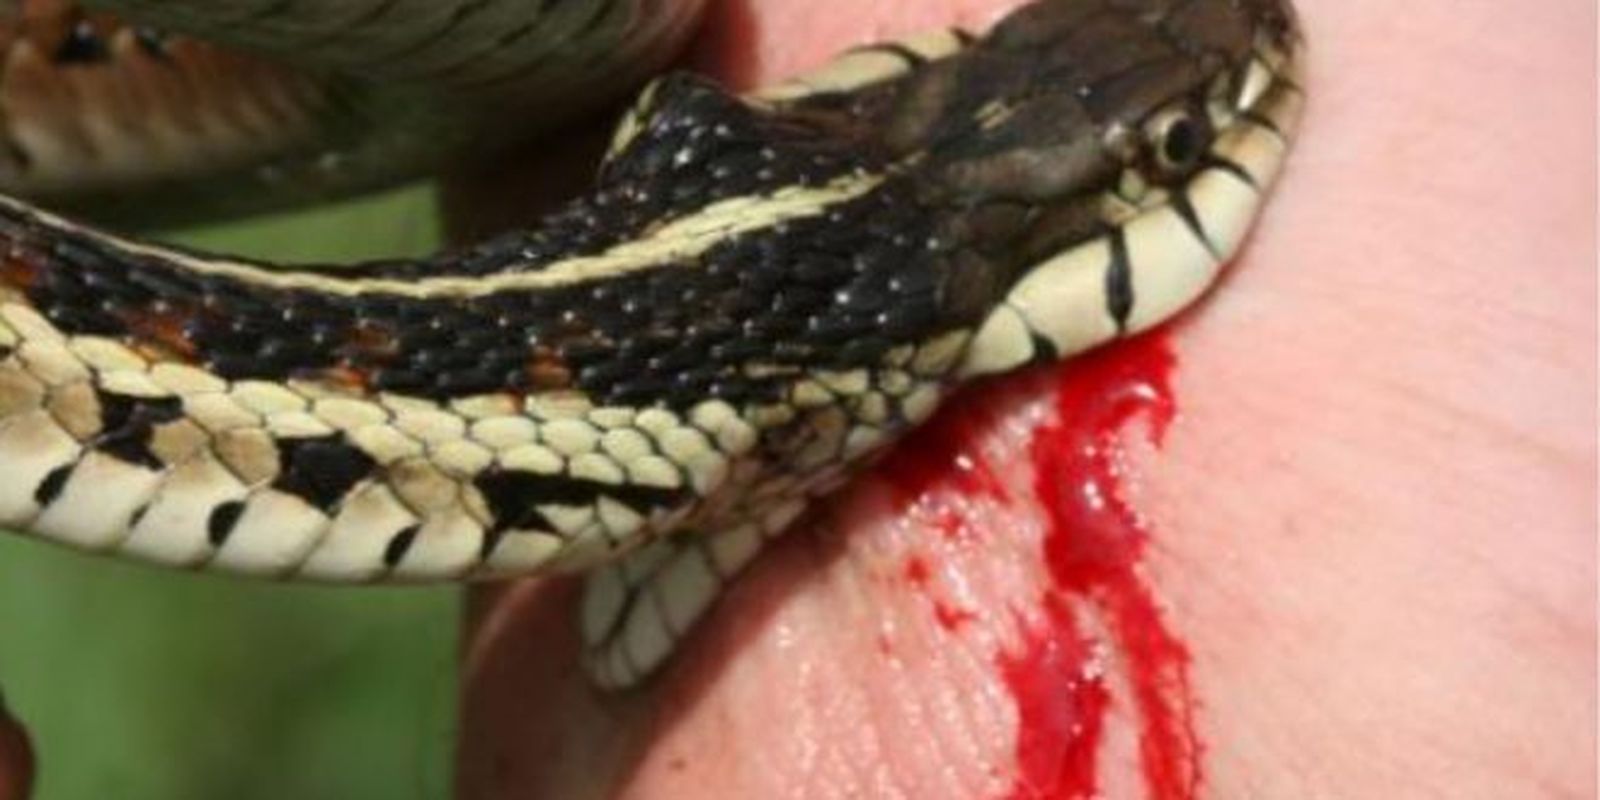 snake bites